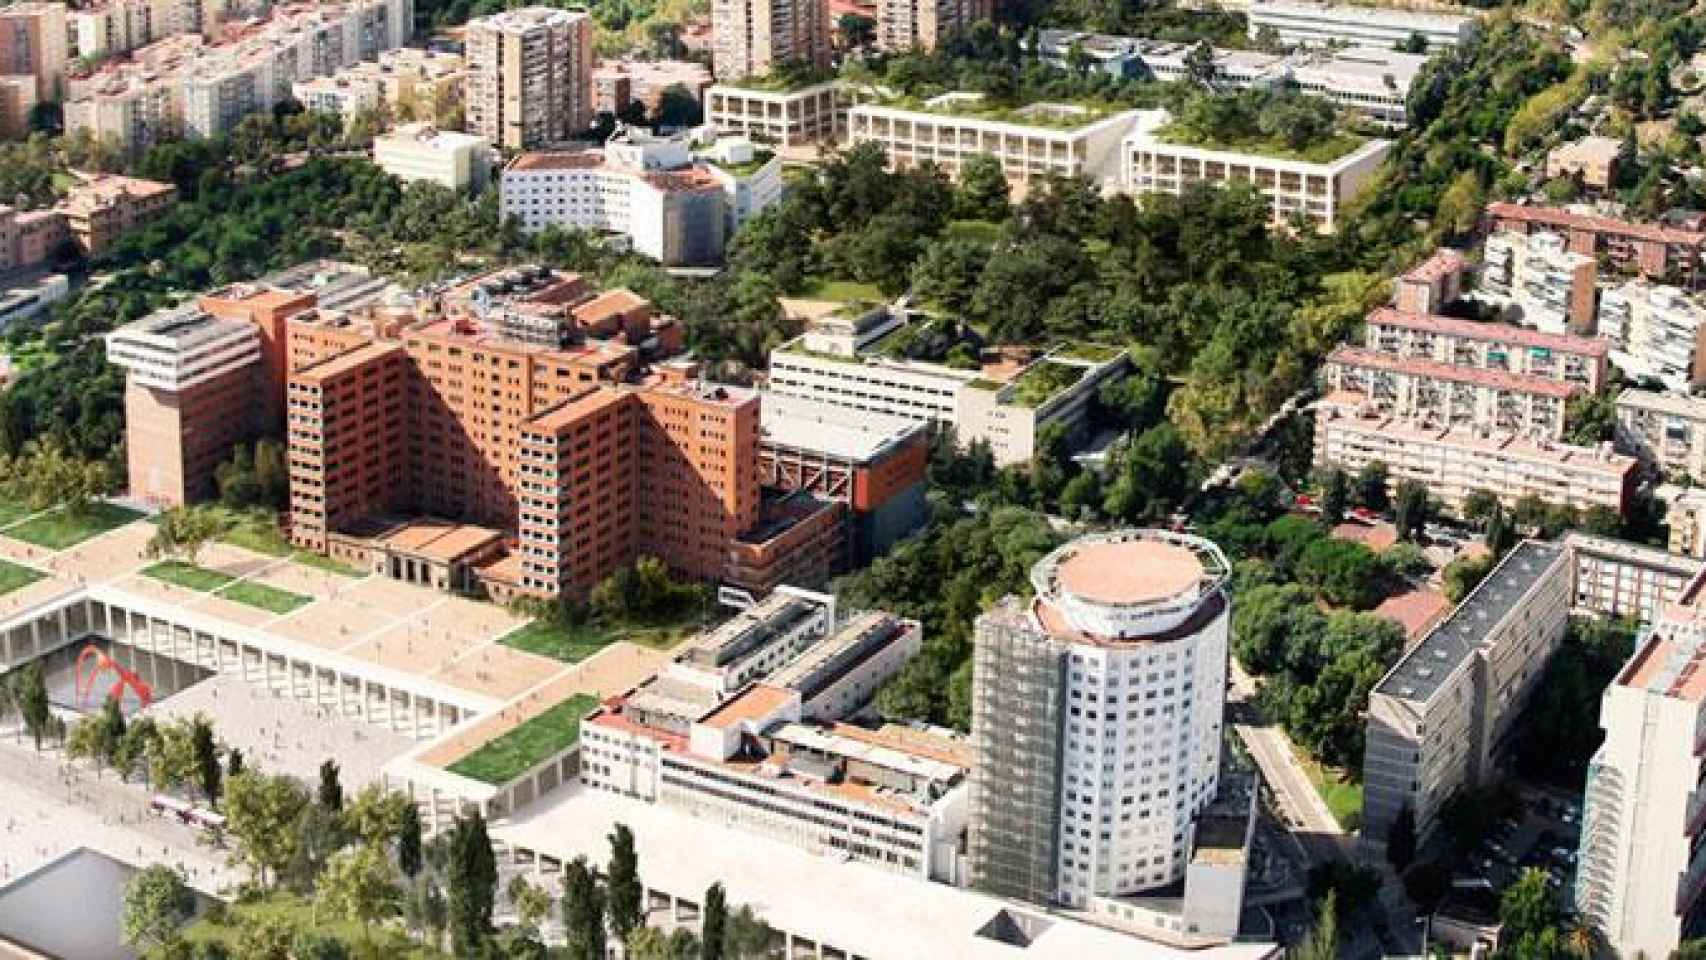 Imagen aérea del Vall d'Hebron Barcelona Hospital Campus, en la Ciudad Condal / CG